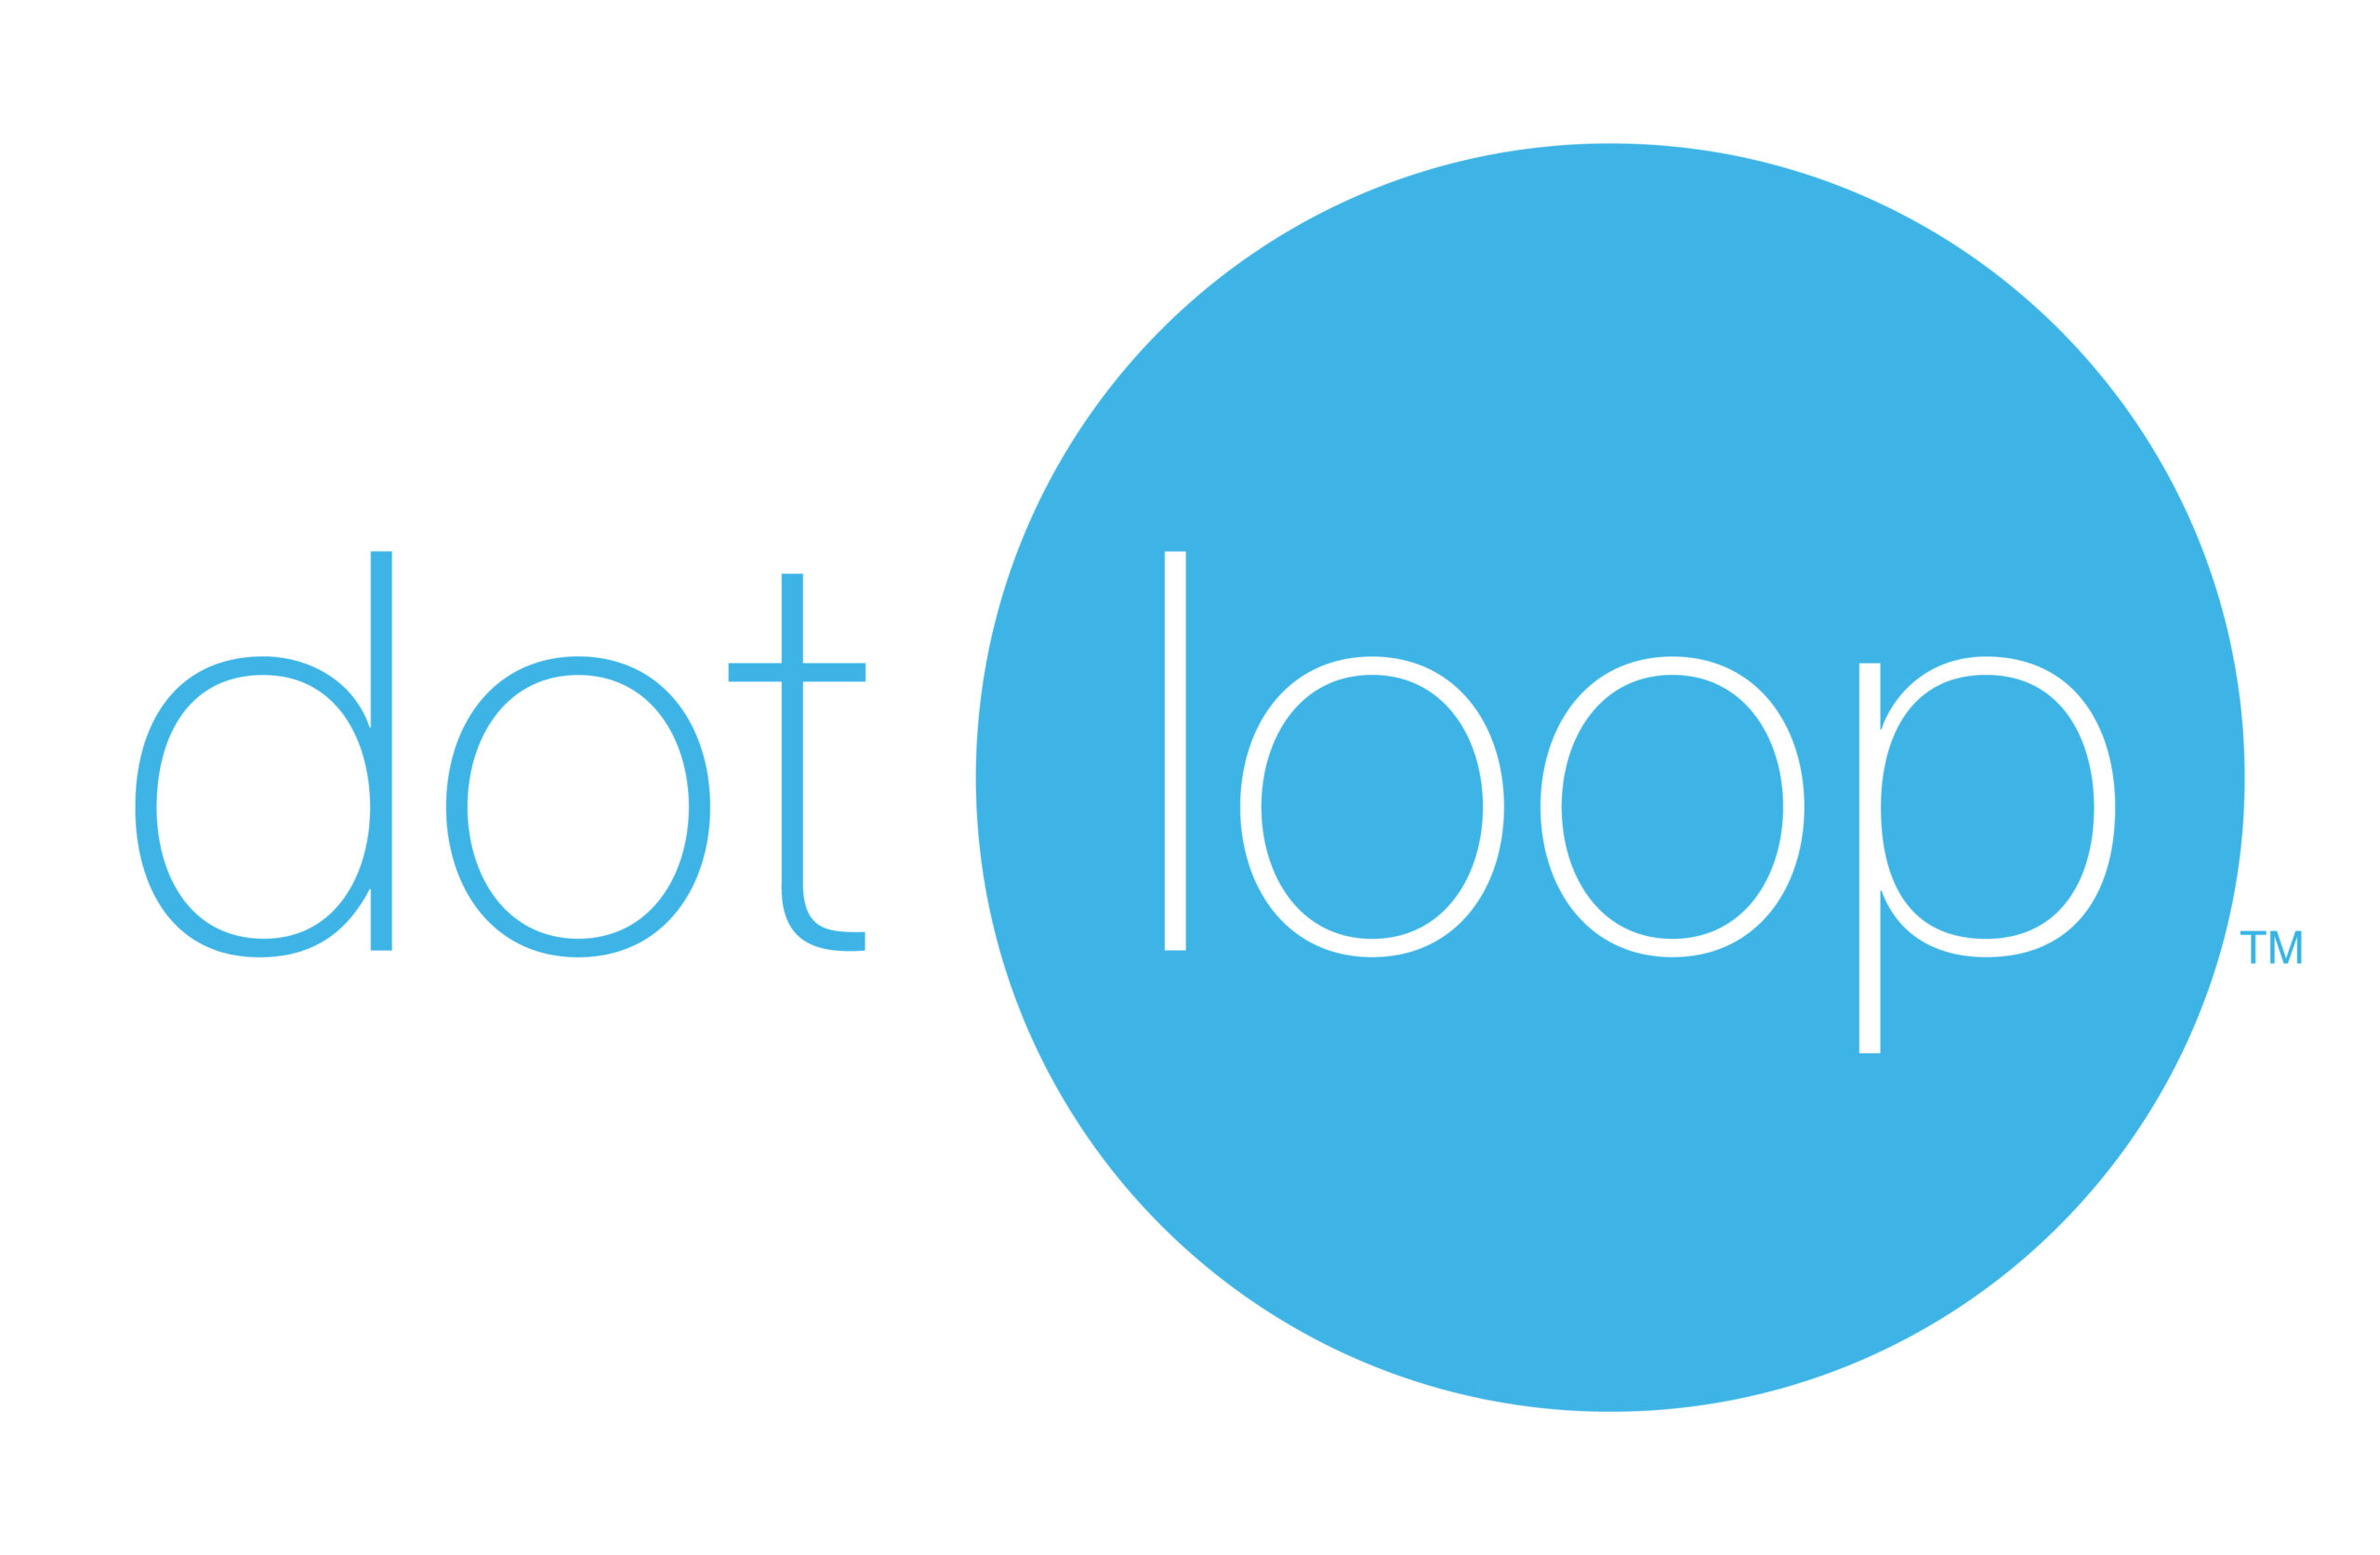 dotloop_logo